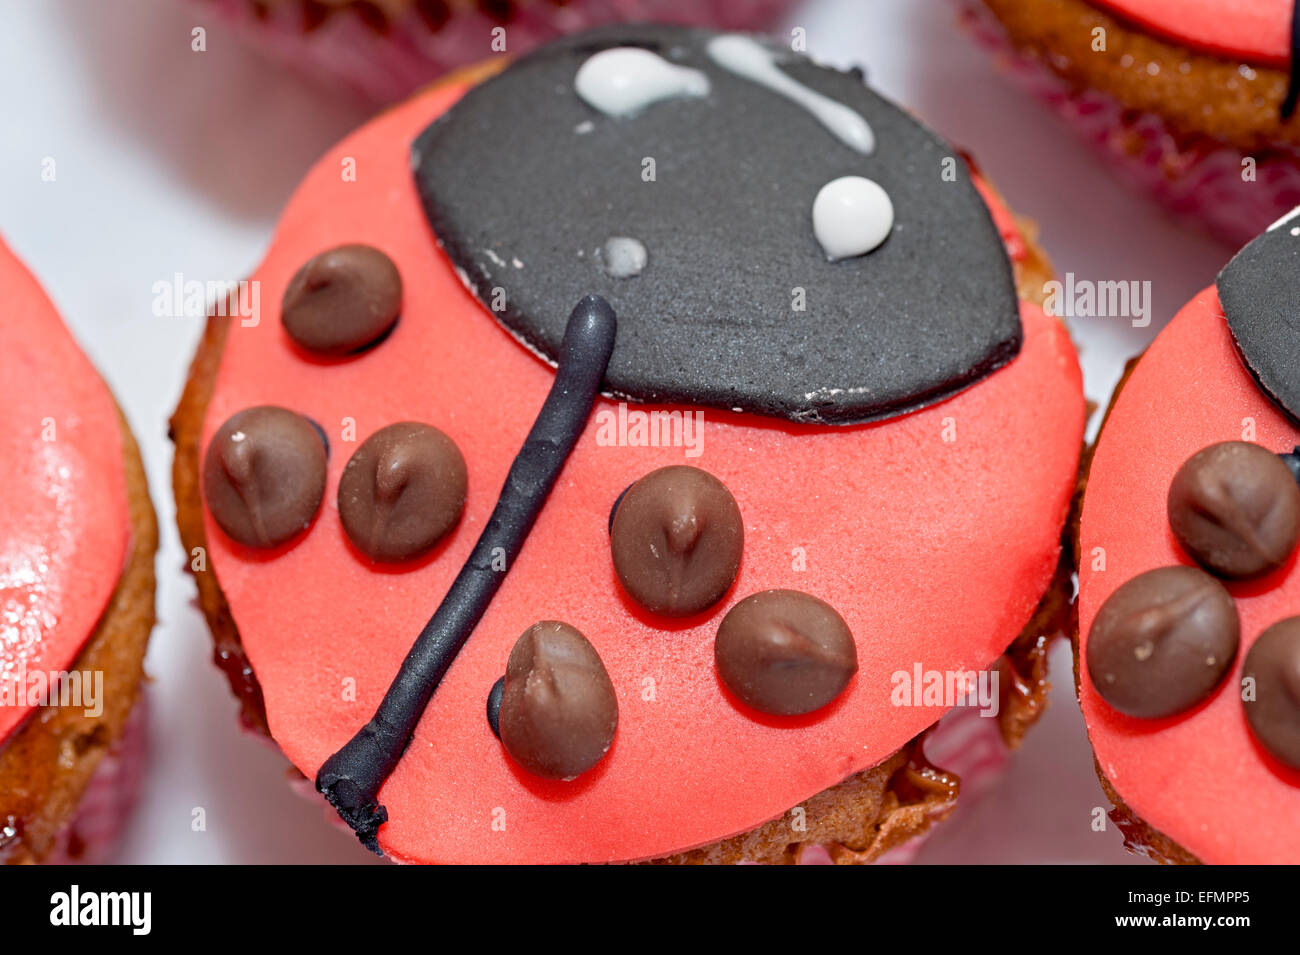 Une coccinelle dans une boîte de gâteau cupcake Banque D'Images